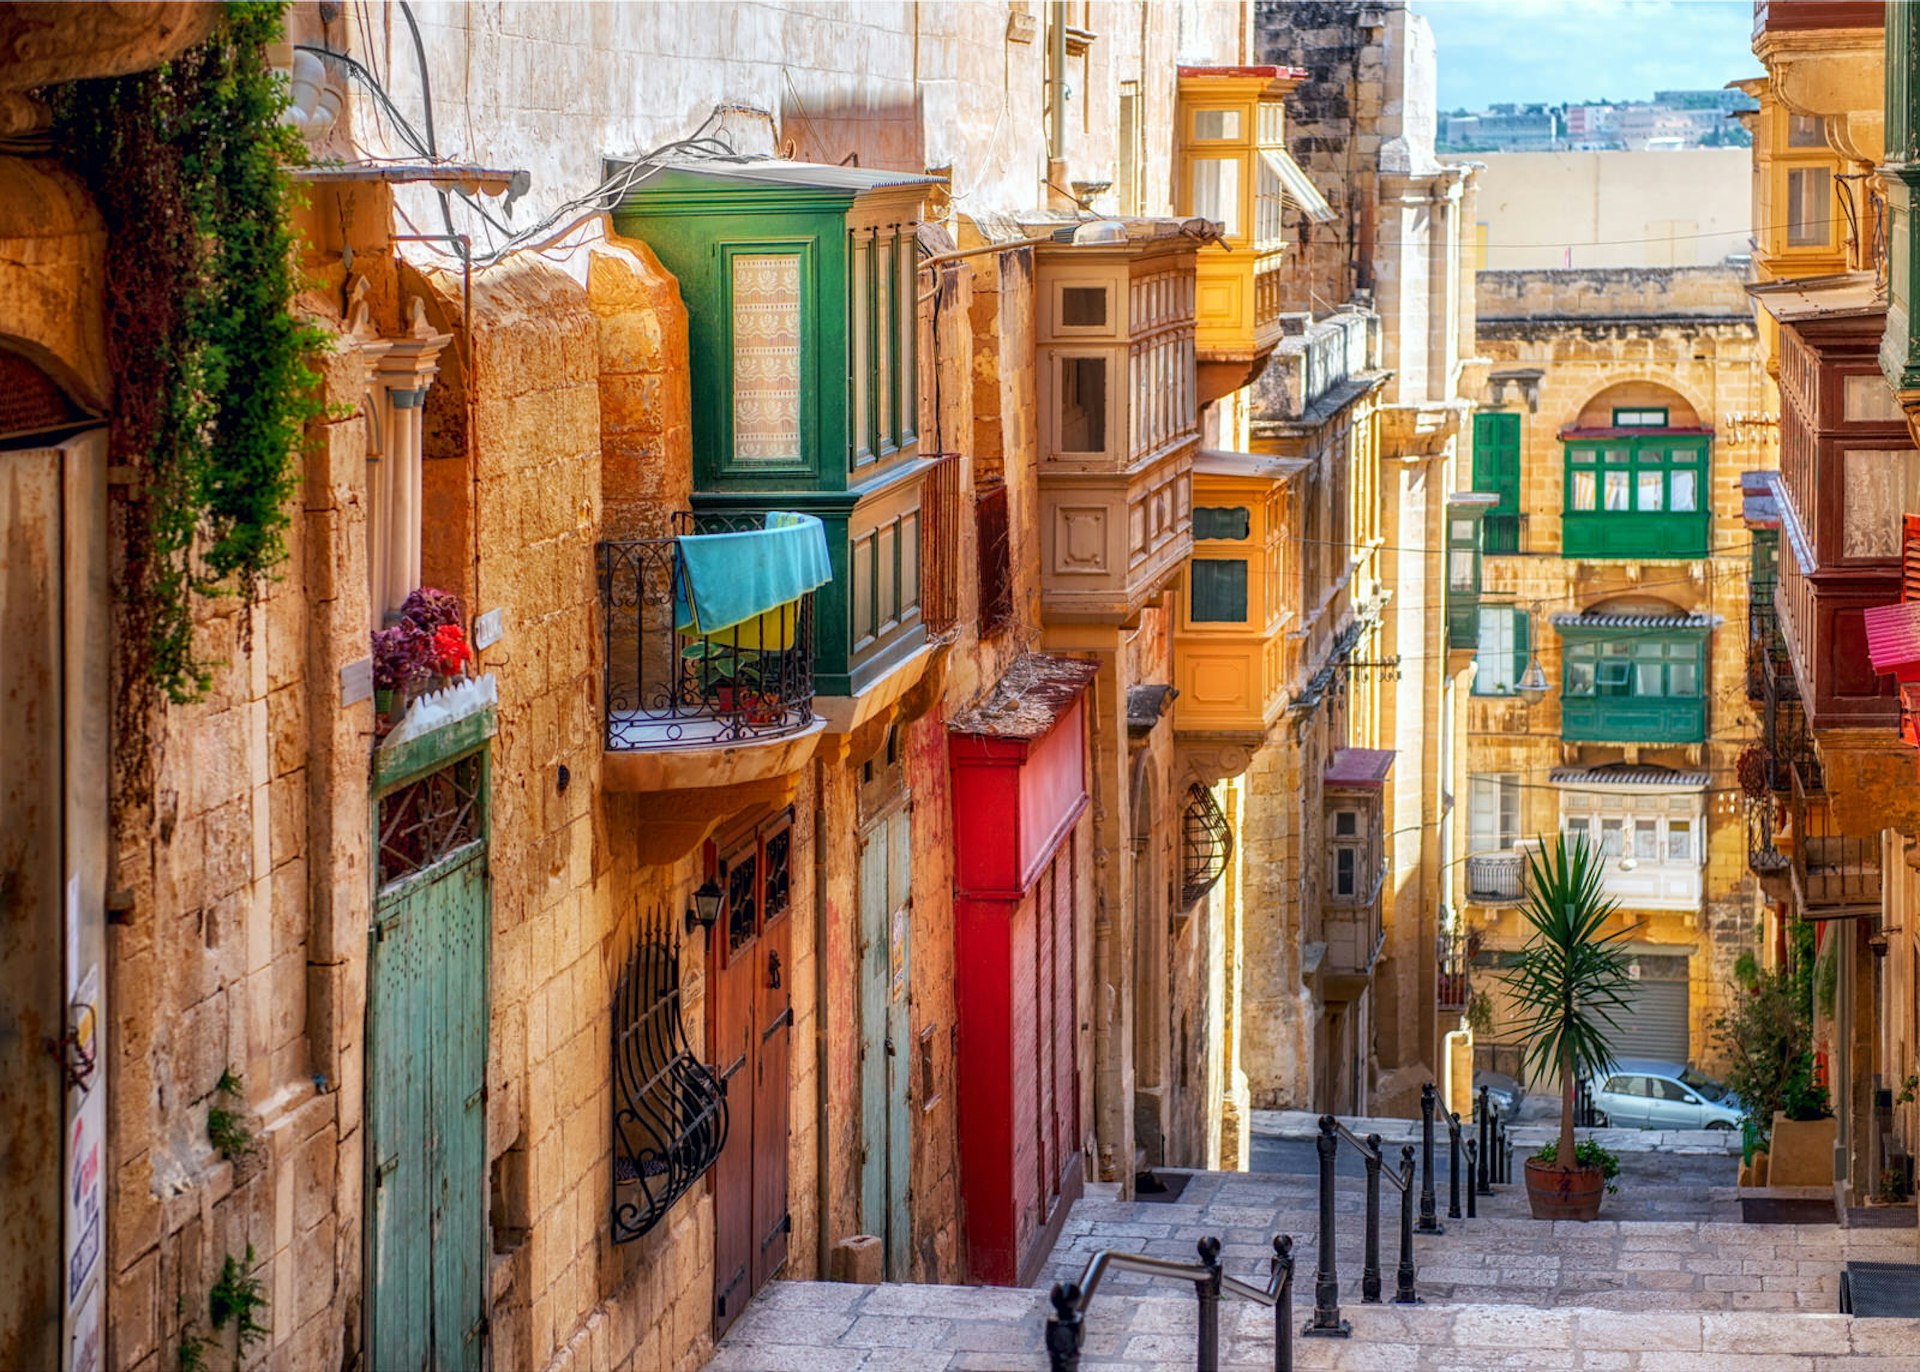 Narrow street in Valletta - the capital of Malta.